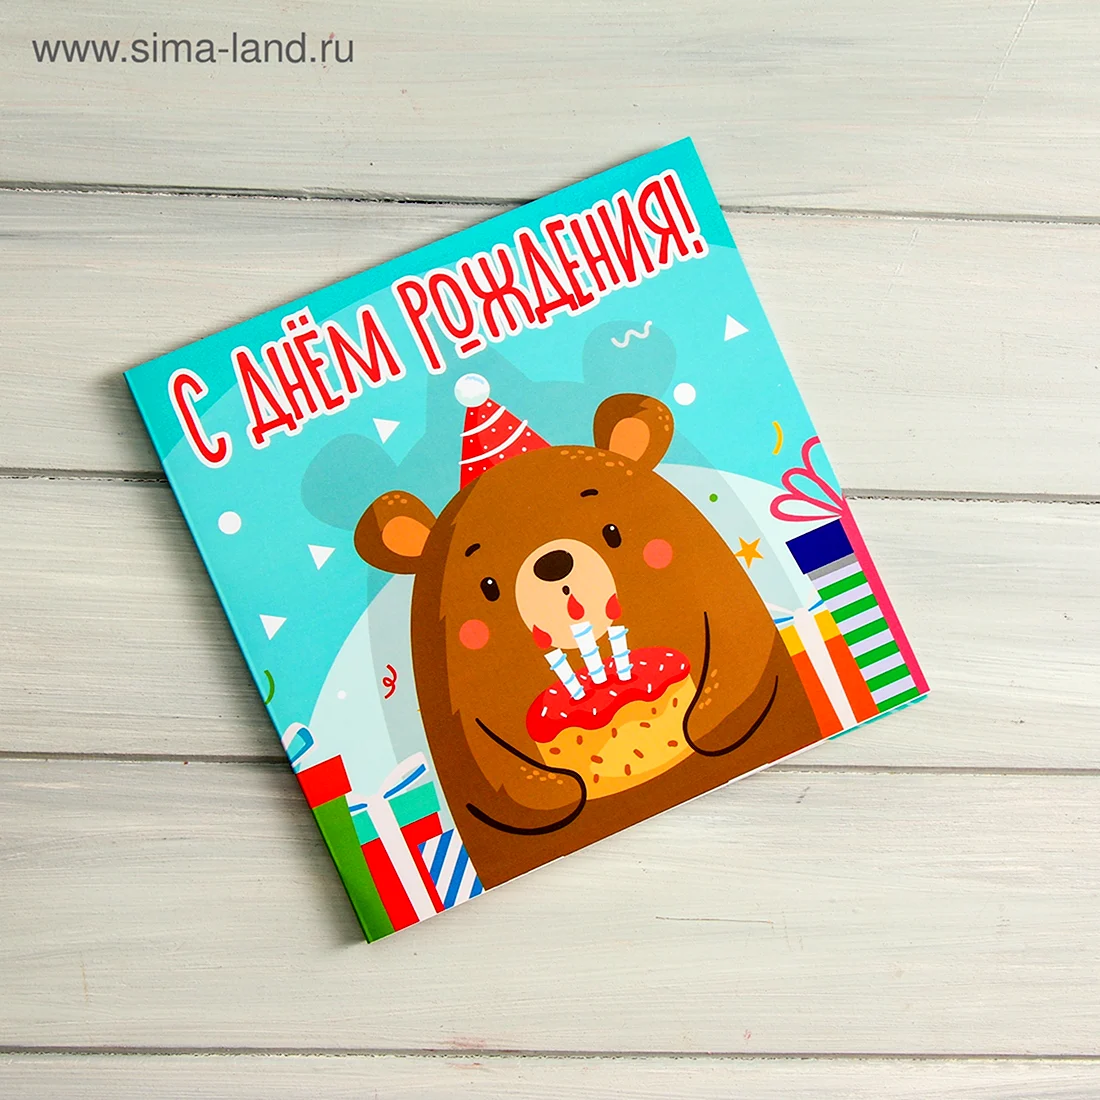 Медведь шоколадка и открытка